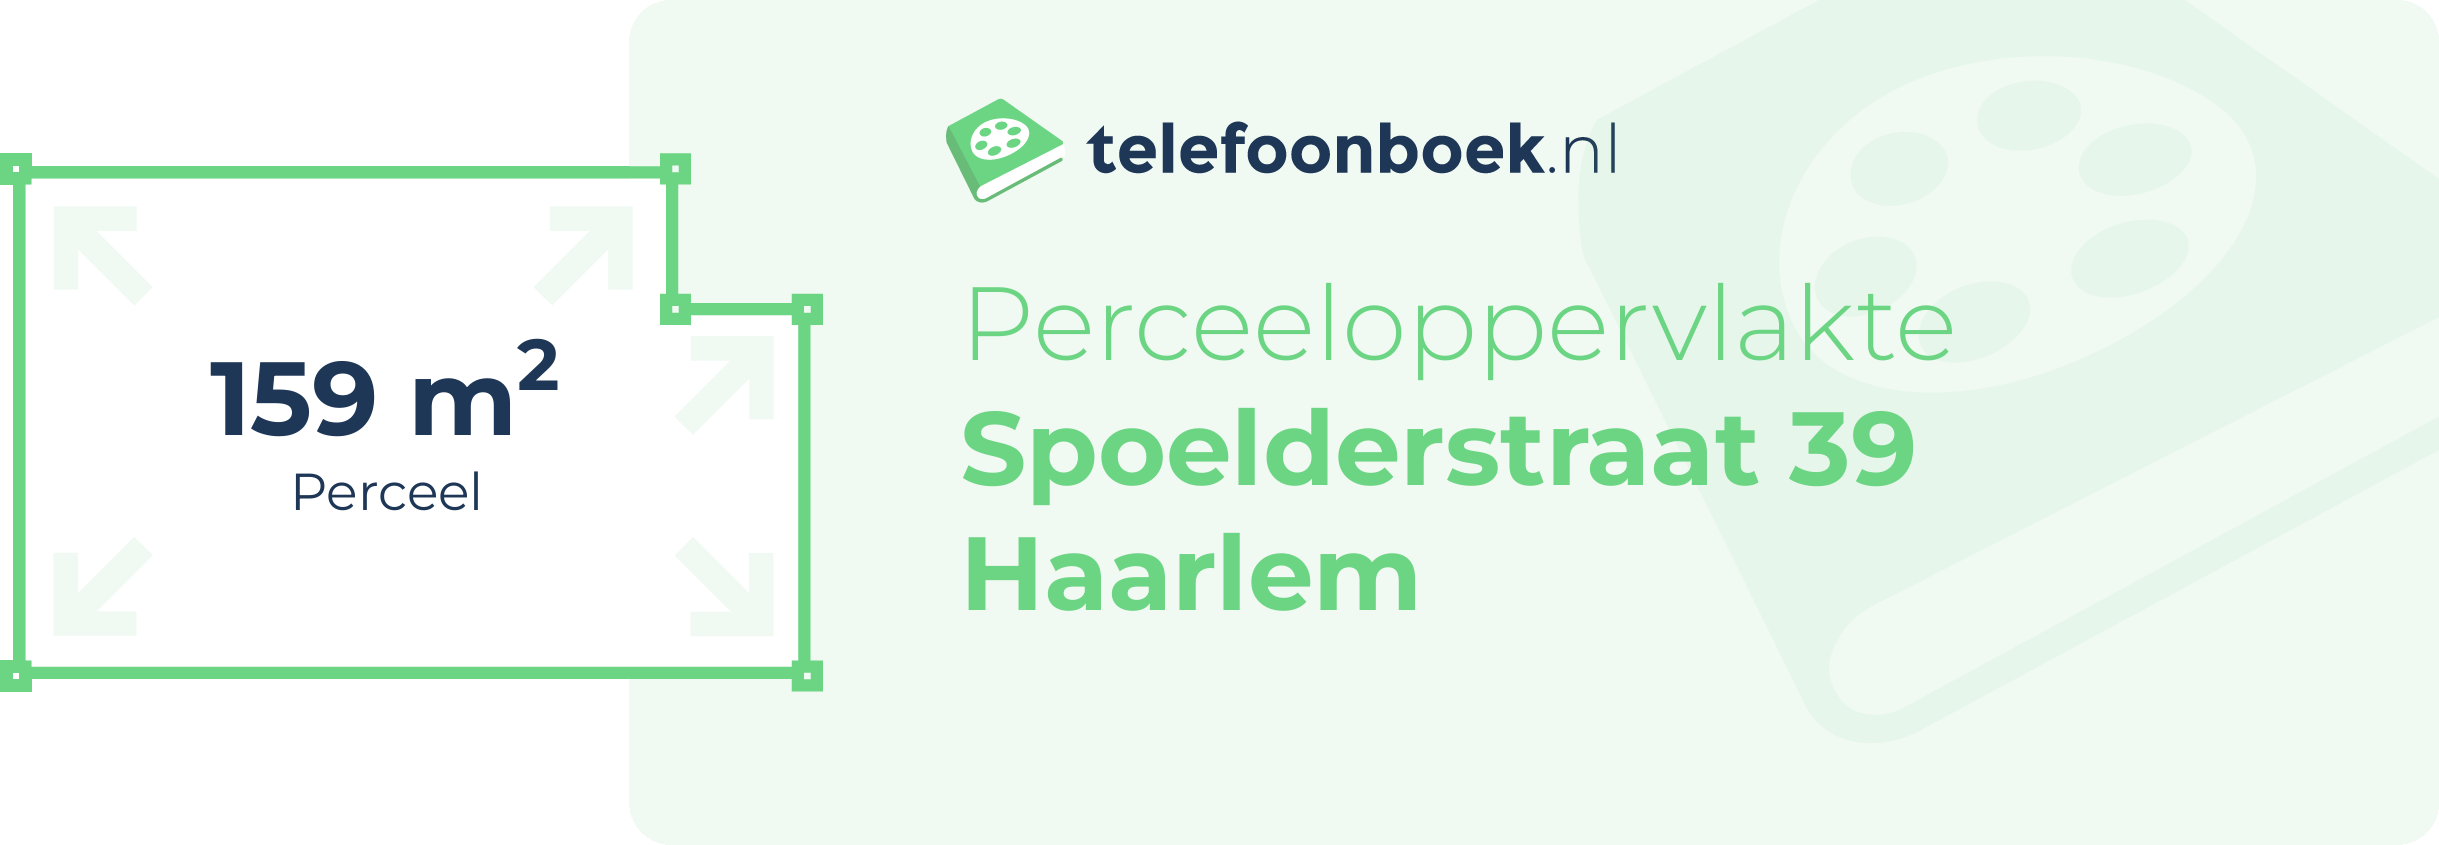 Perceeloppervlakte Spoelderstraat 39 Haarlem